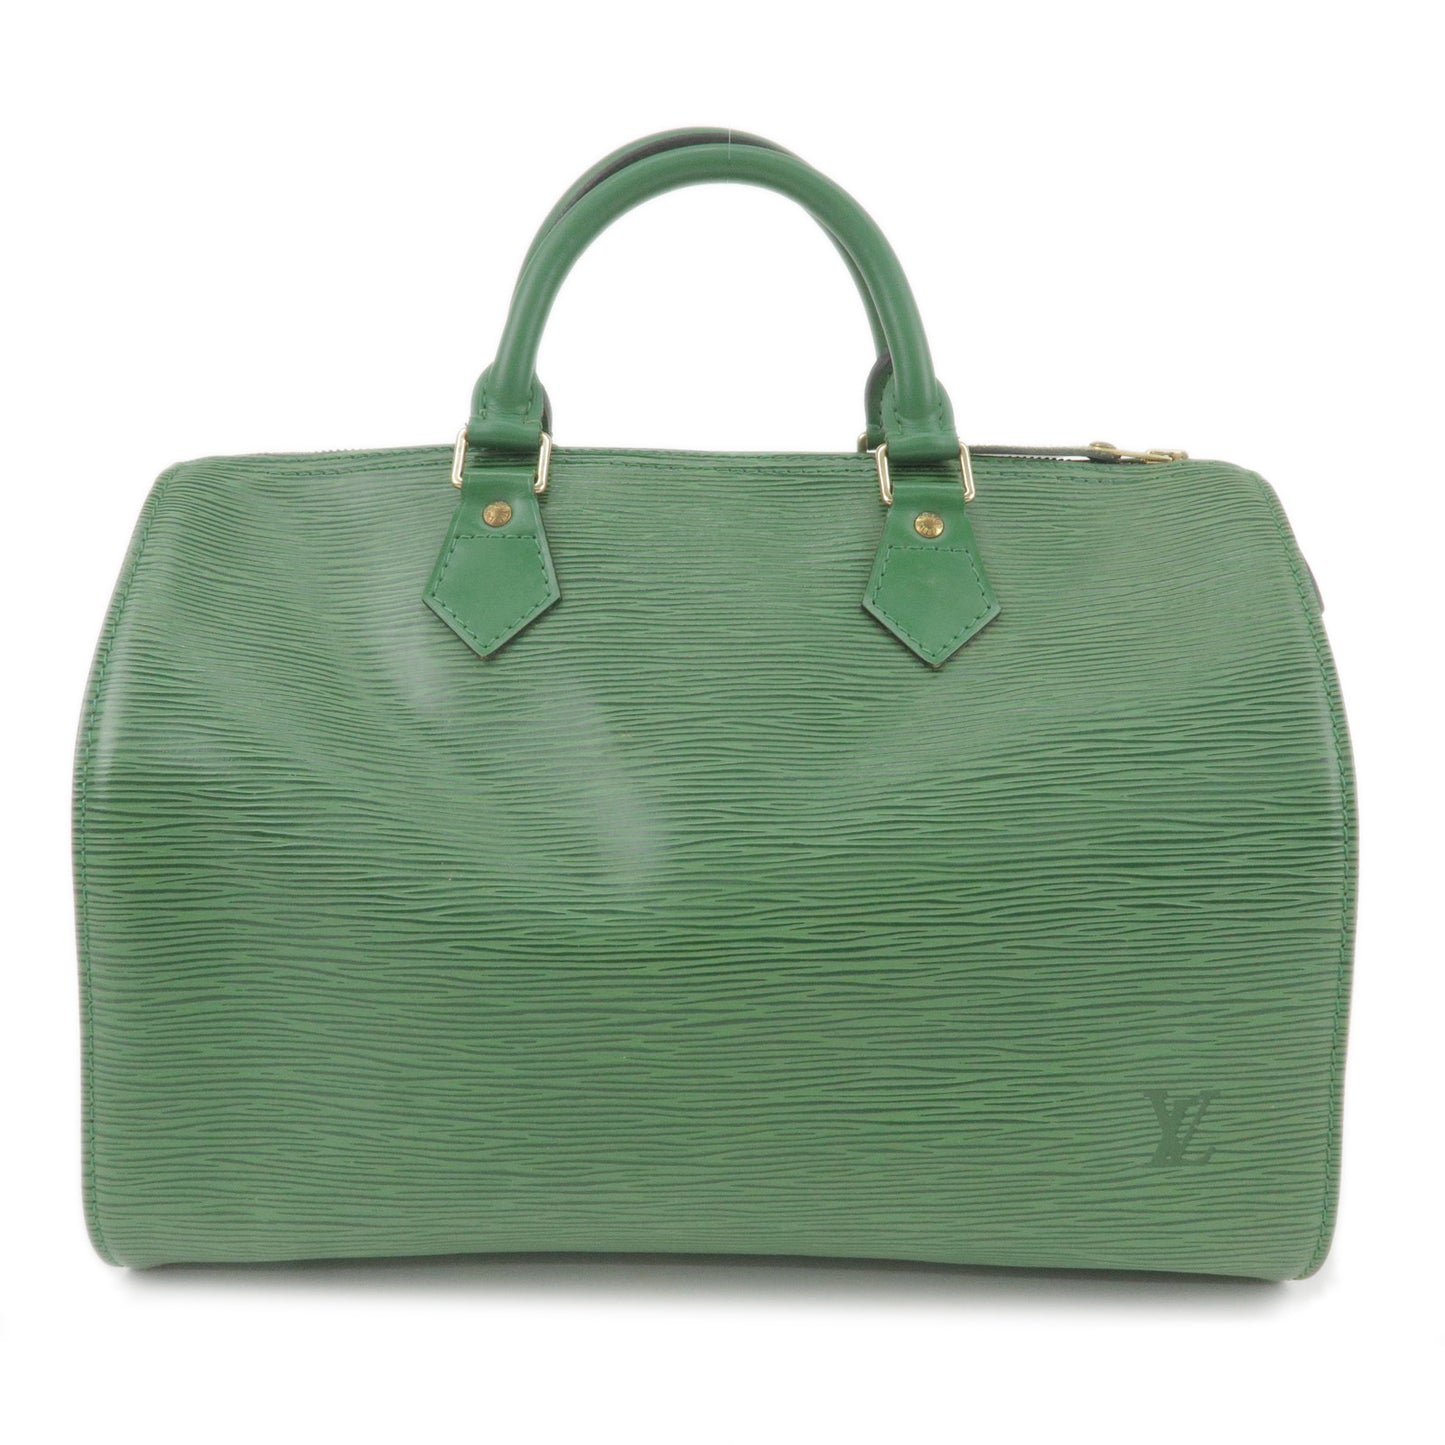 LOUIS VUITTON Handbag M43004 Speedy 30 Epi Epi Leather green Women